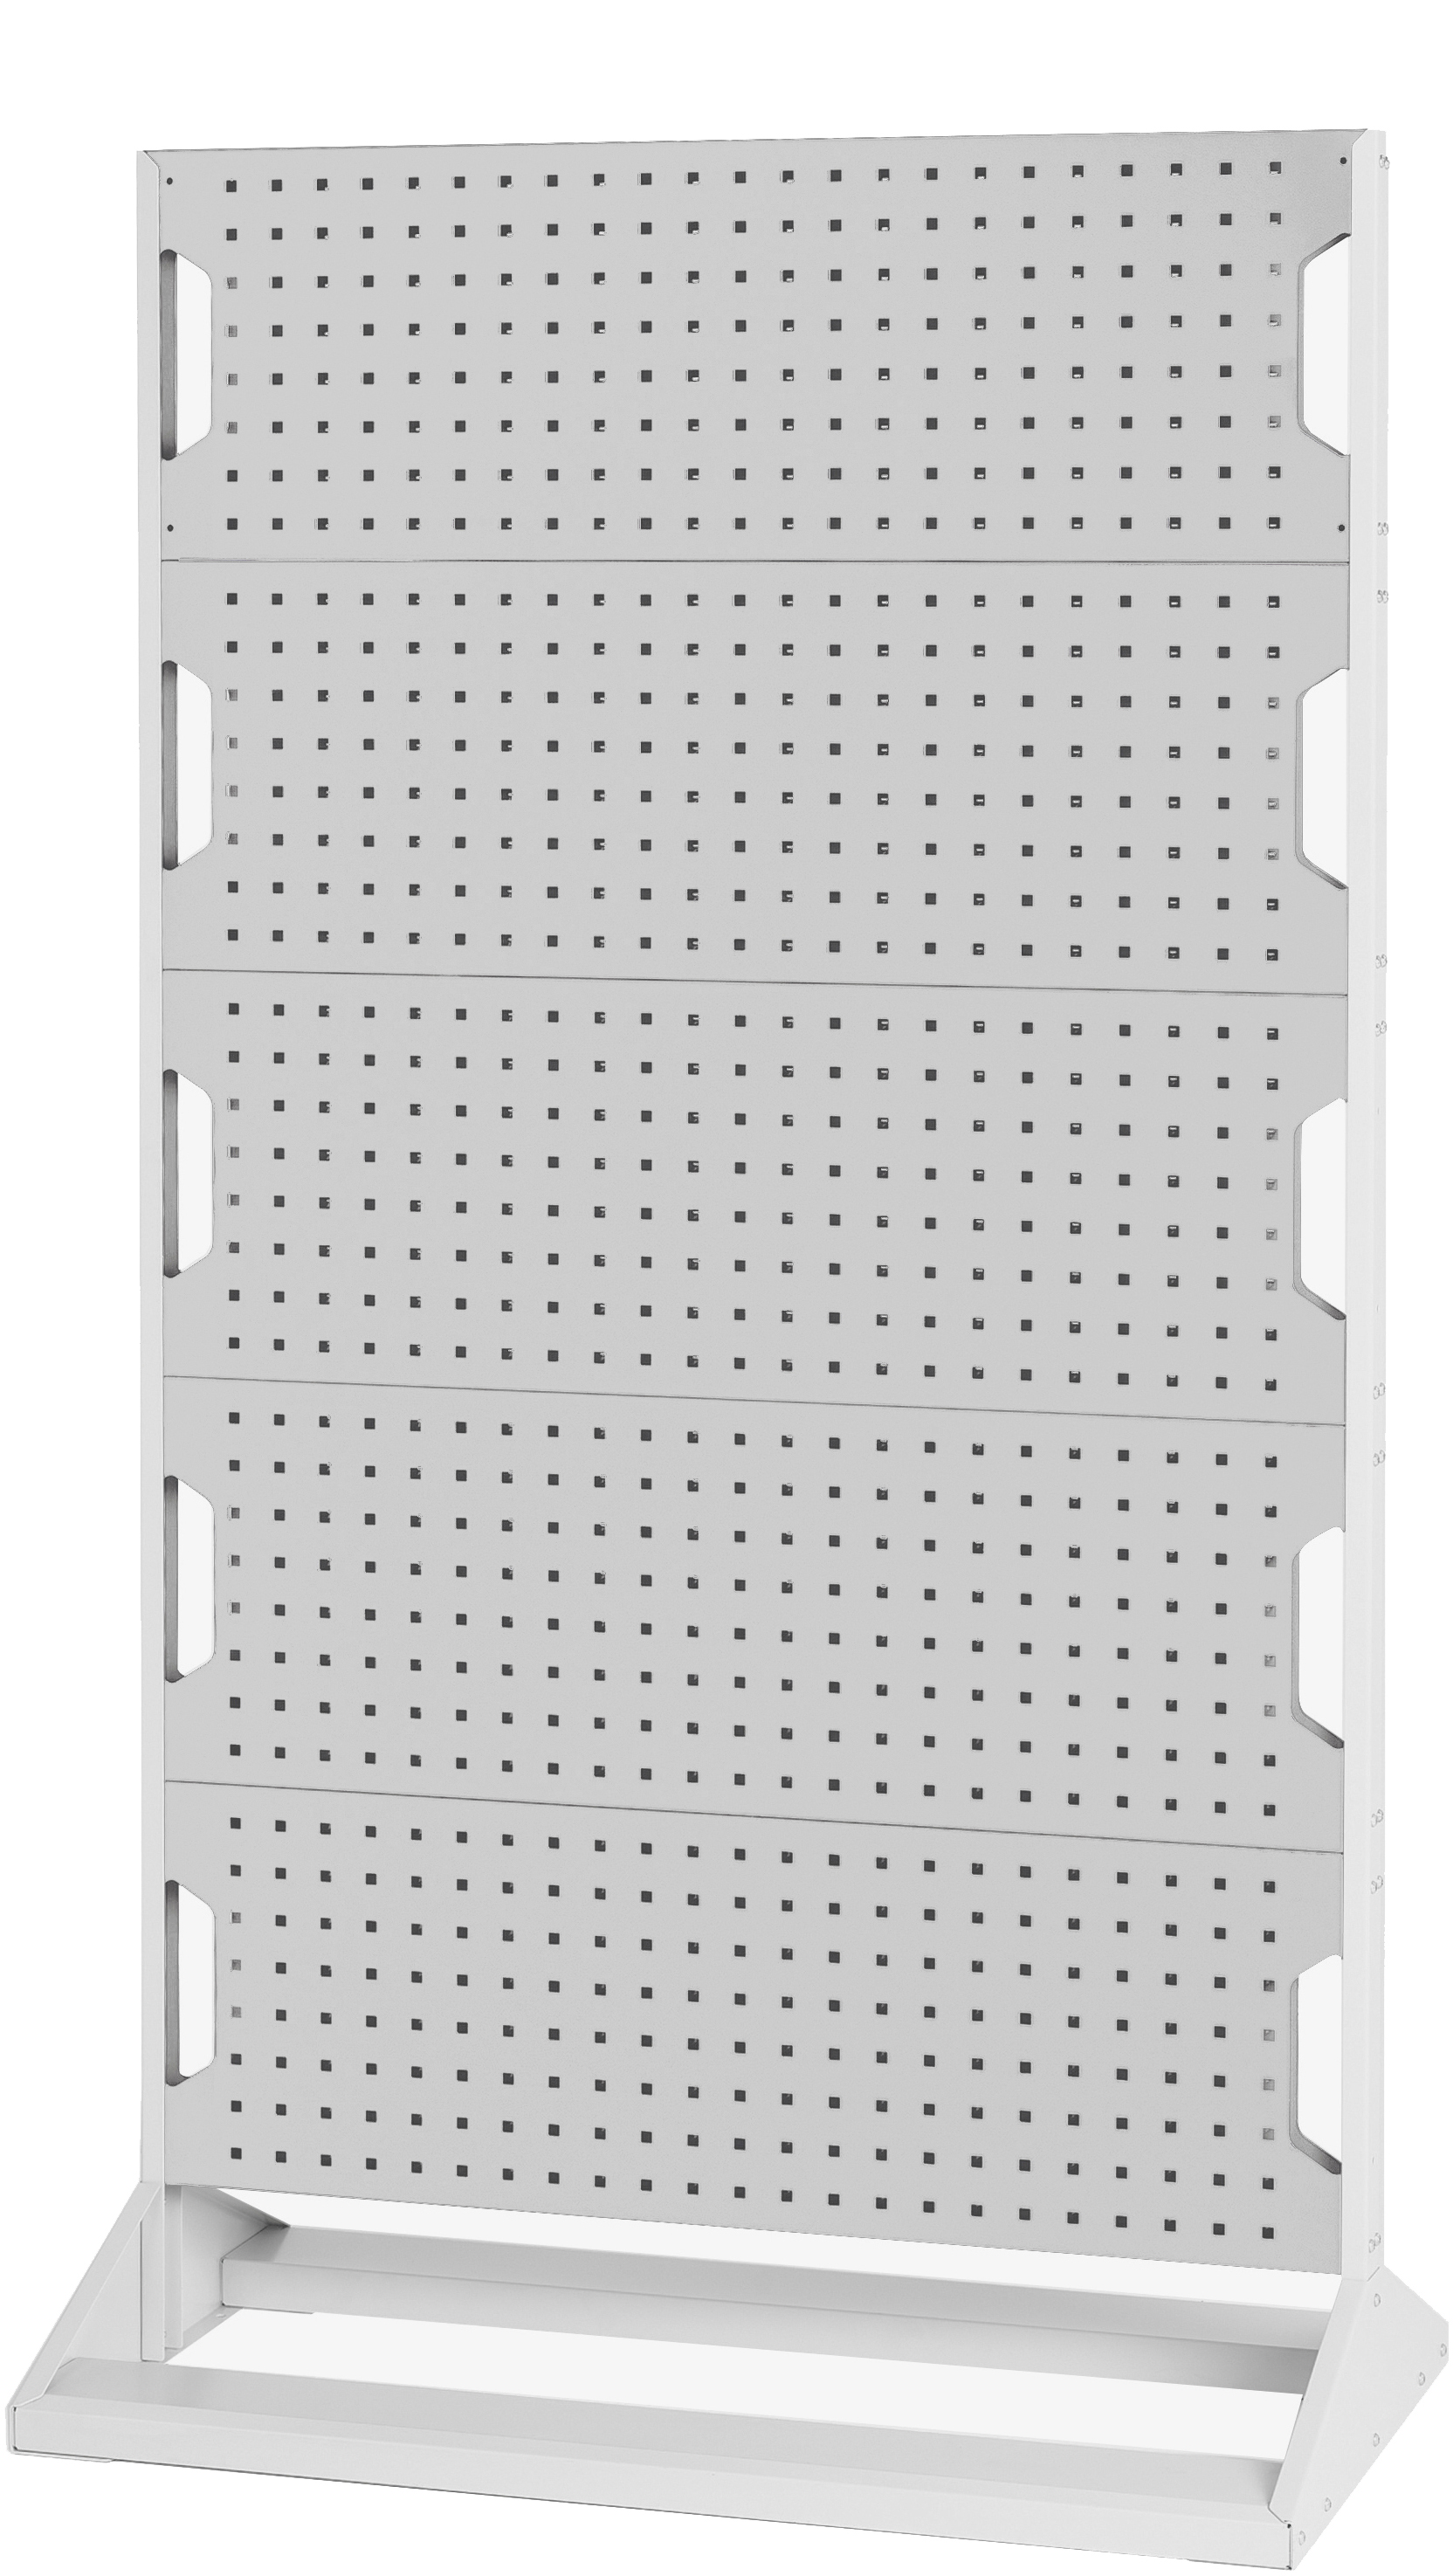 Bott Perfo Panel Rack (Single Sided) - 16917107.16V